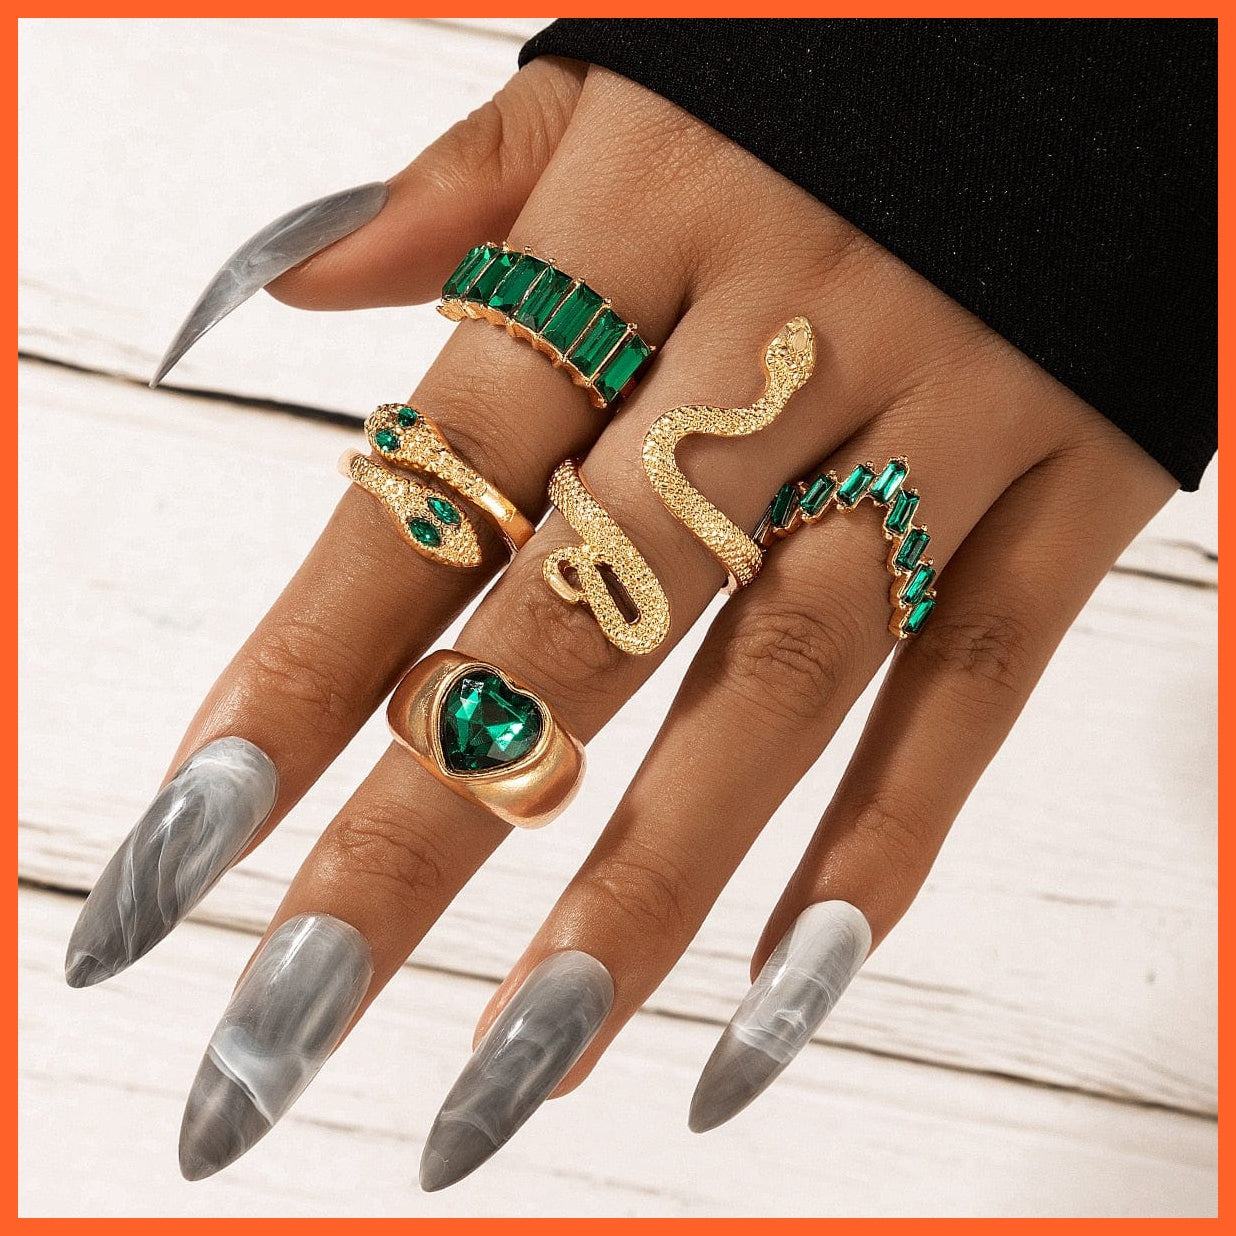 whatagift.uk heart ring / Resizable Open Adjustable Silver Snake Ring Set For Women